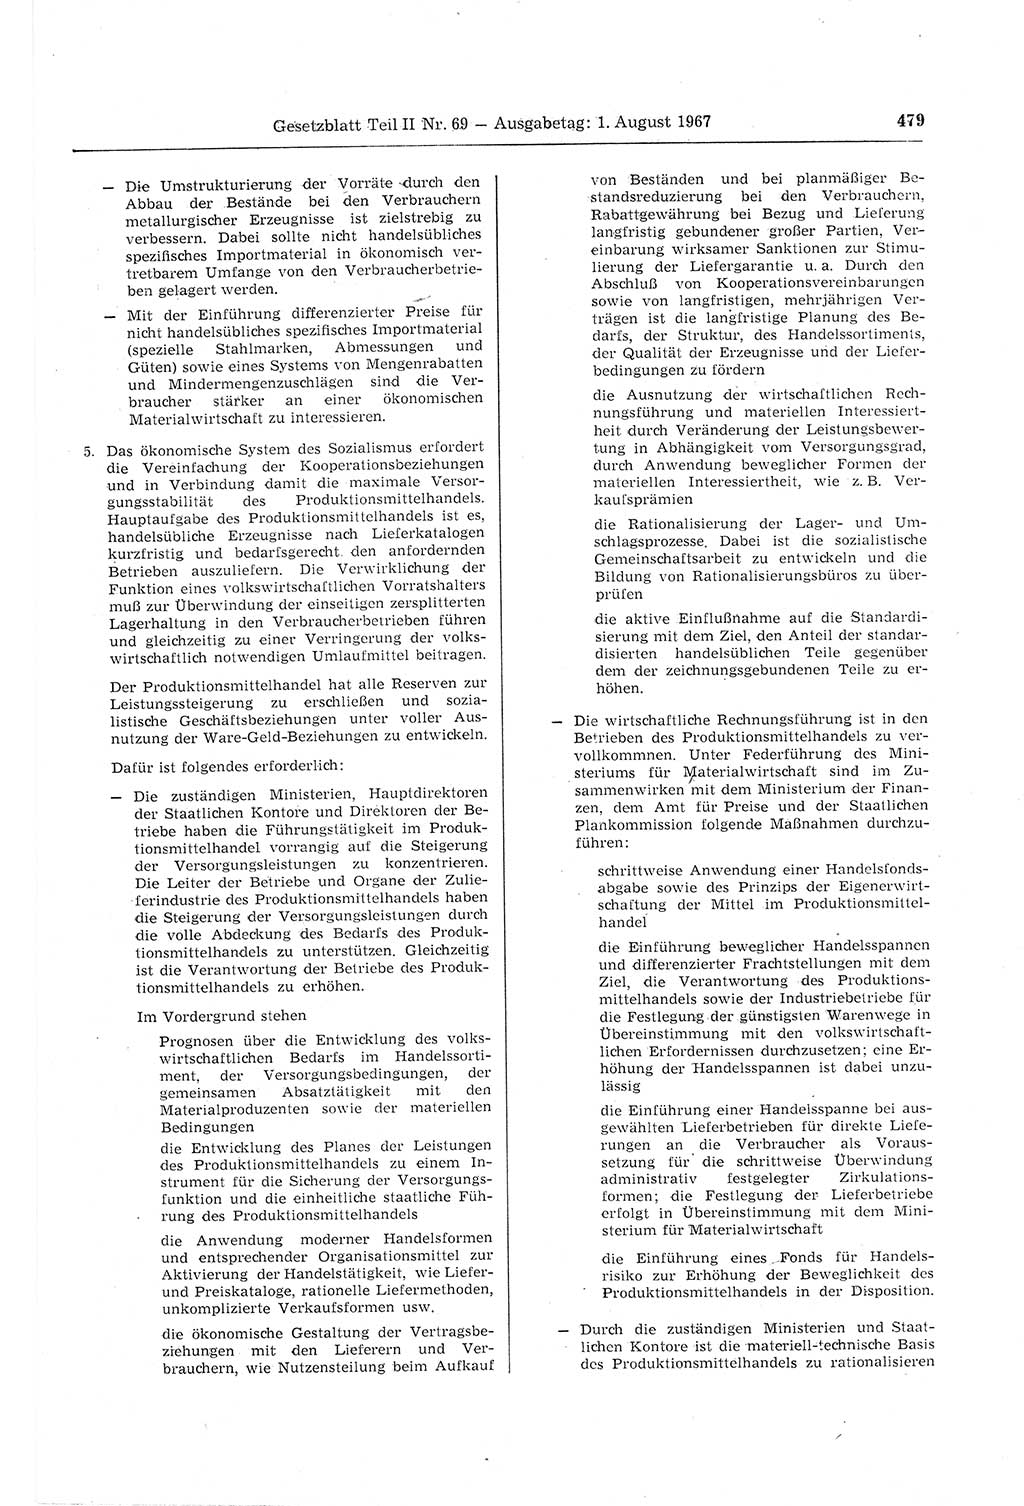 Gesetzblatt (GBl.) der Deutschen Demokratischen Republik (DDR) Teil ⅠⅠ 1967, Seite 479 (GBl. DDR ⅠⅠ 1967, S. 479)